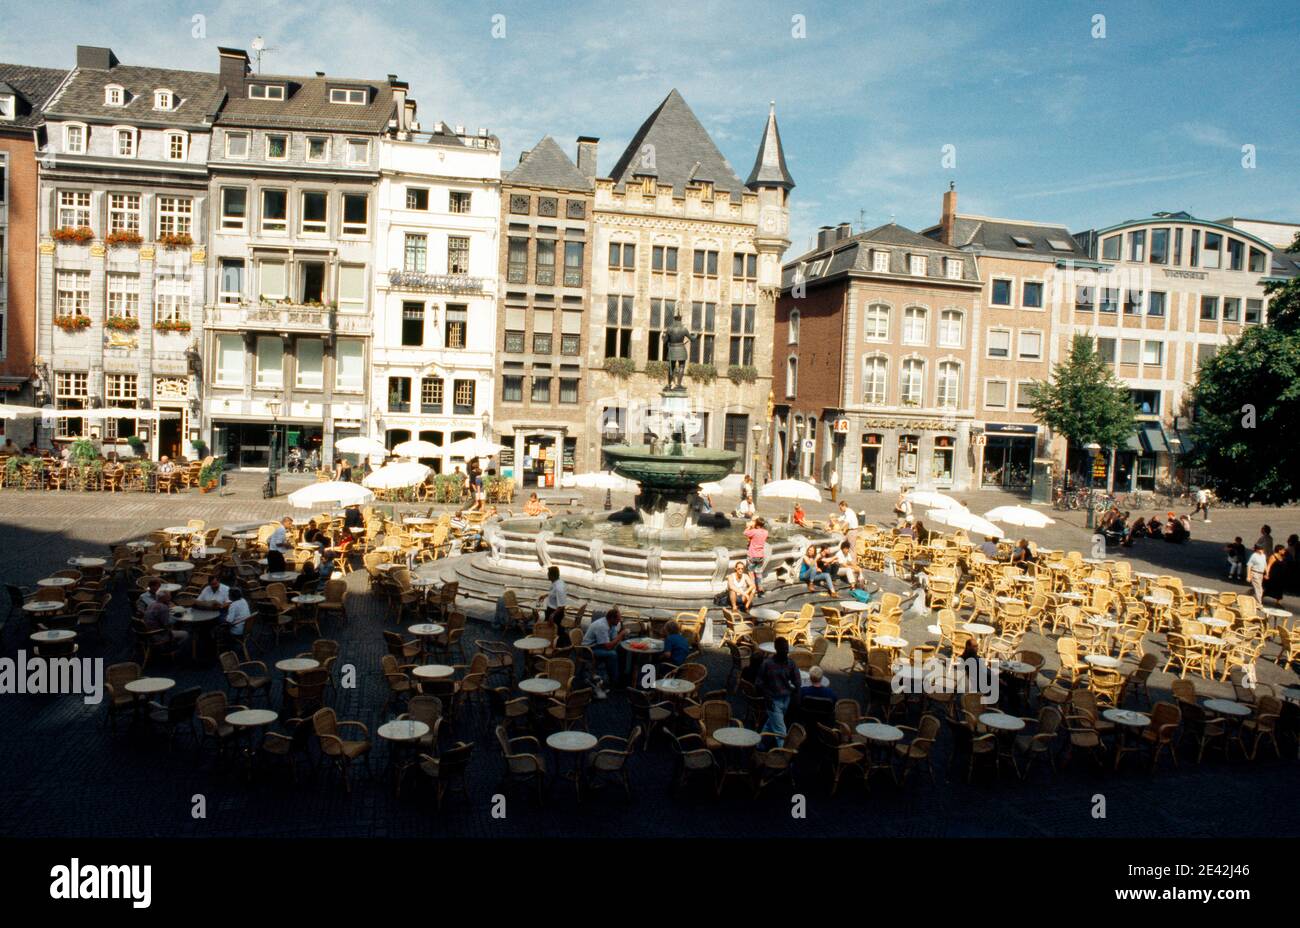 Markt am Rathaus mit Haus Lˆwenstein Stock Photo